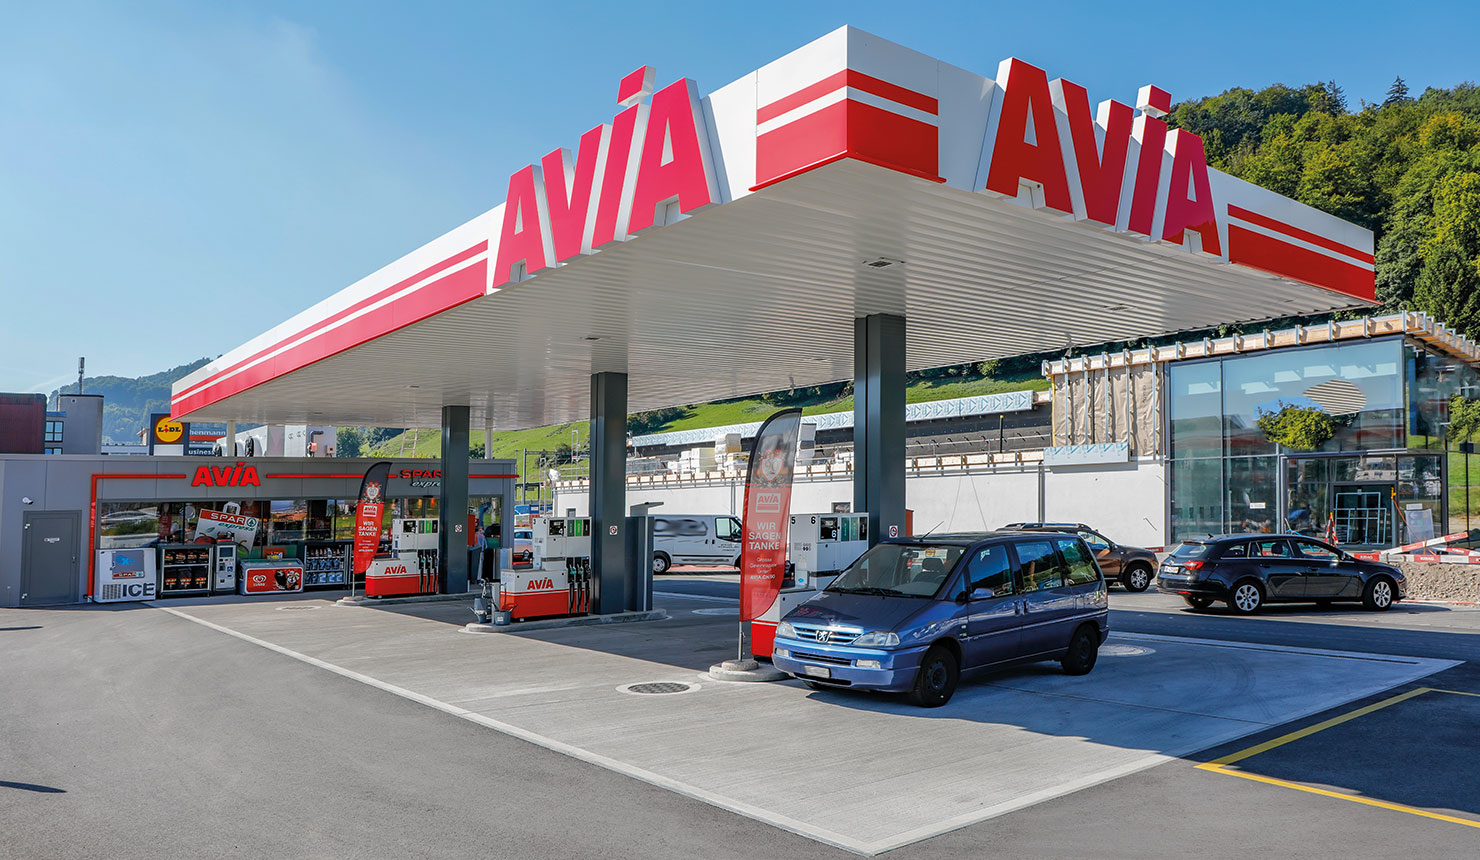 Автозаправочная станция AVIA, Керзац/Берн – проект, реализованный Arbonia